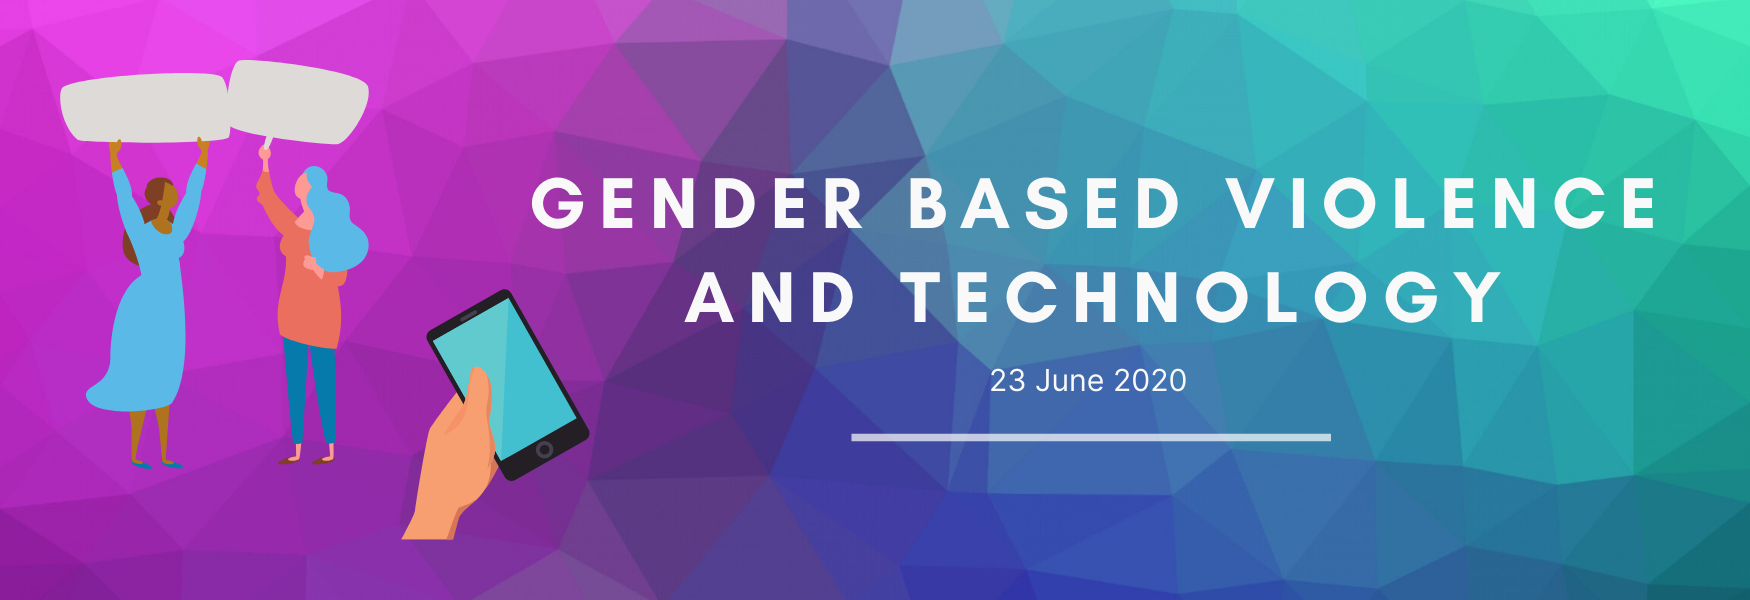 Gender-Based Violence and Technology